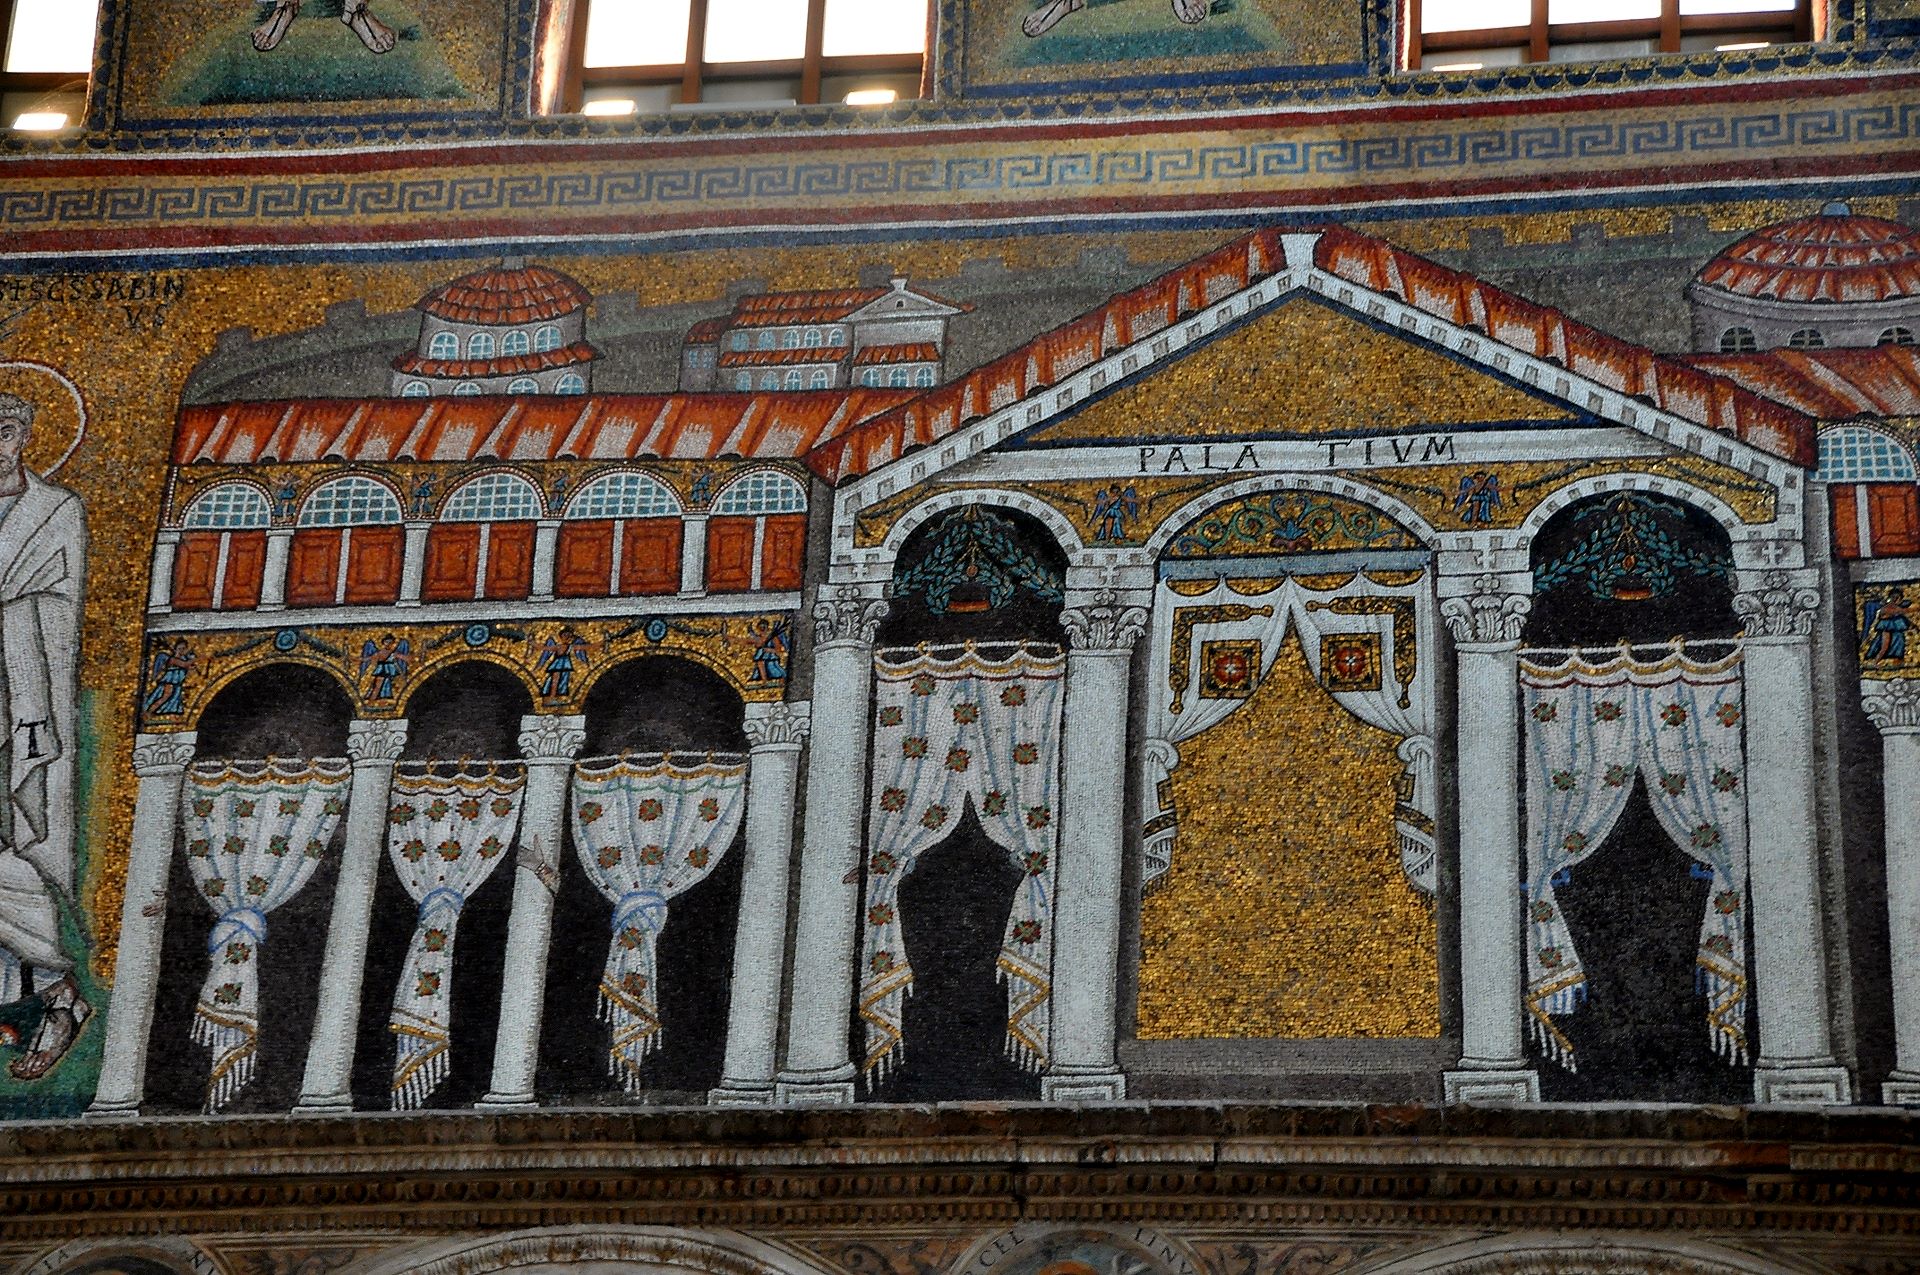 Basilica di Sant’Apollinare Nuovo - Mosaik mit dem Palast Theoderichs, die Figuren wurden durch weiße Gardinen ersetzt